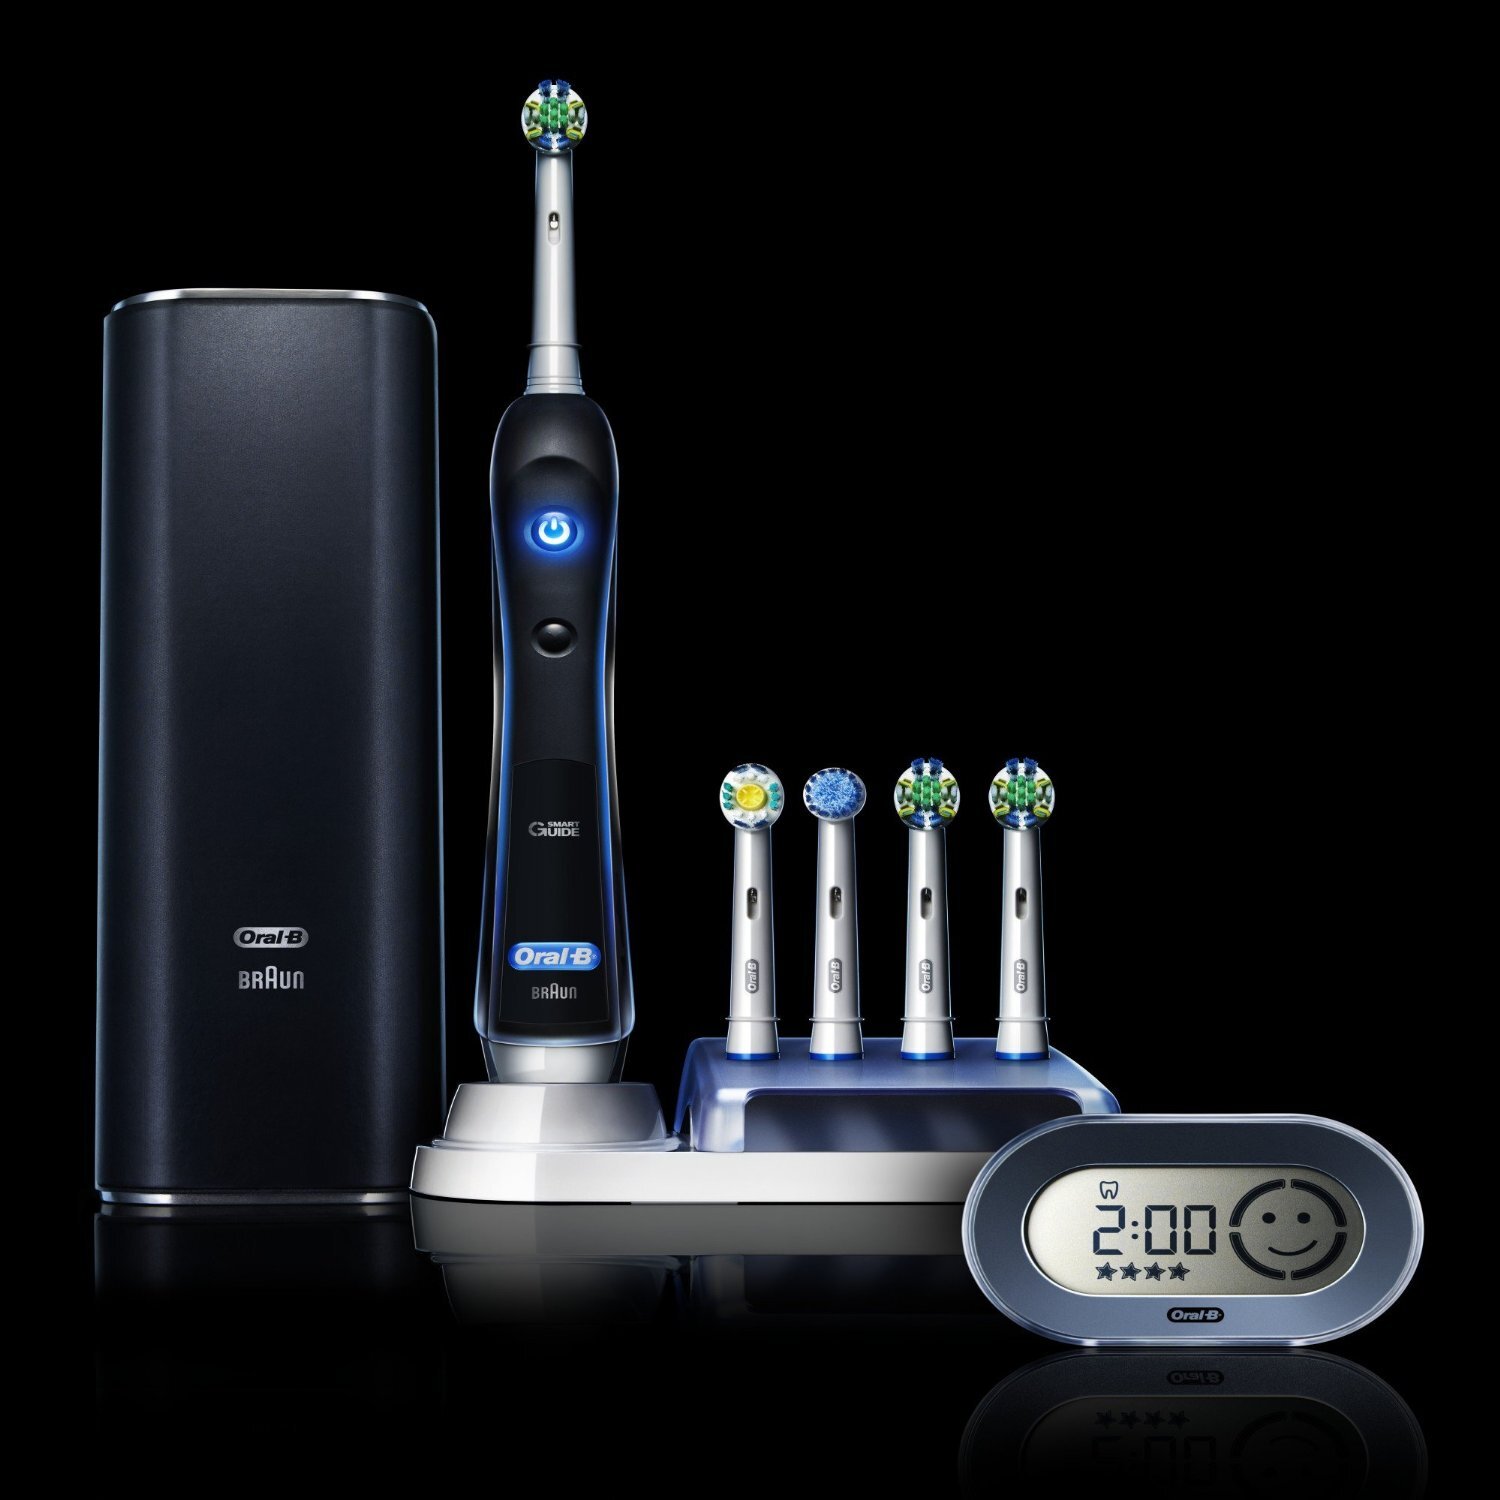 Bàn chải điện đánh răng tự động Oral-B Braun Pro 7000 có giá khoảng 3.000.000 VNĐ